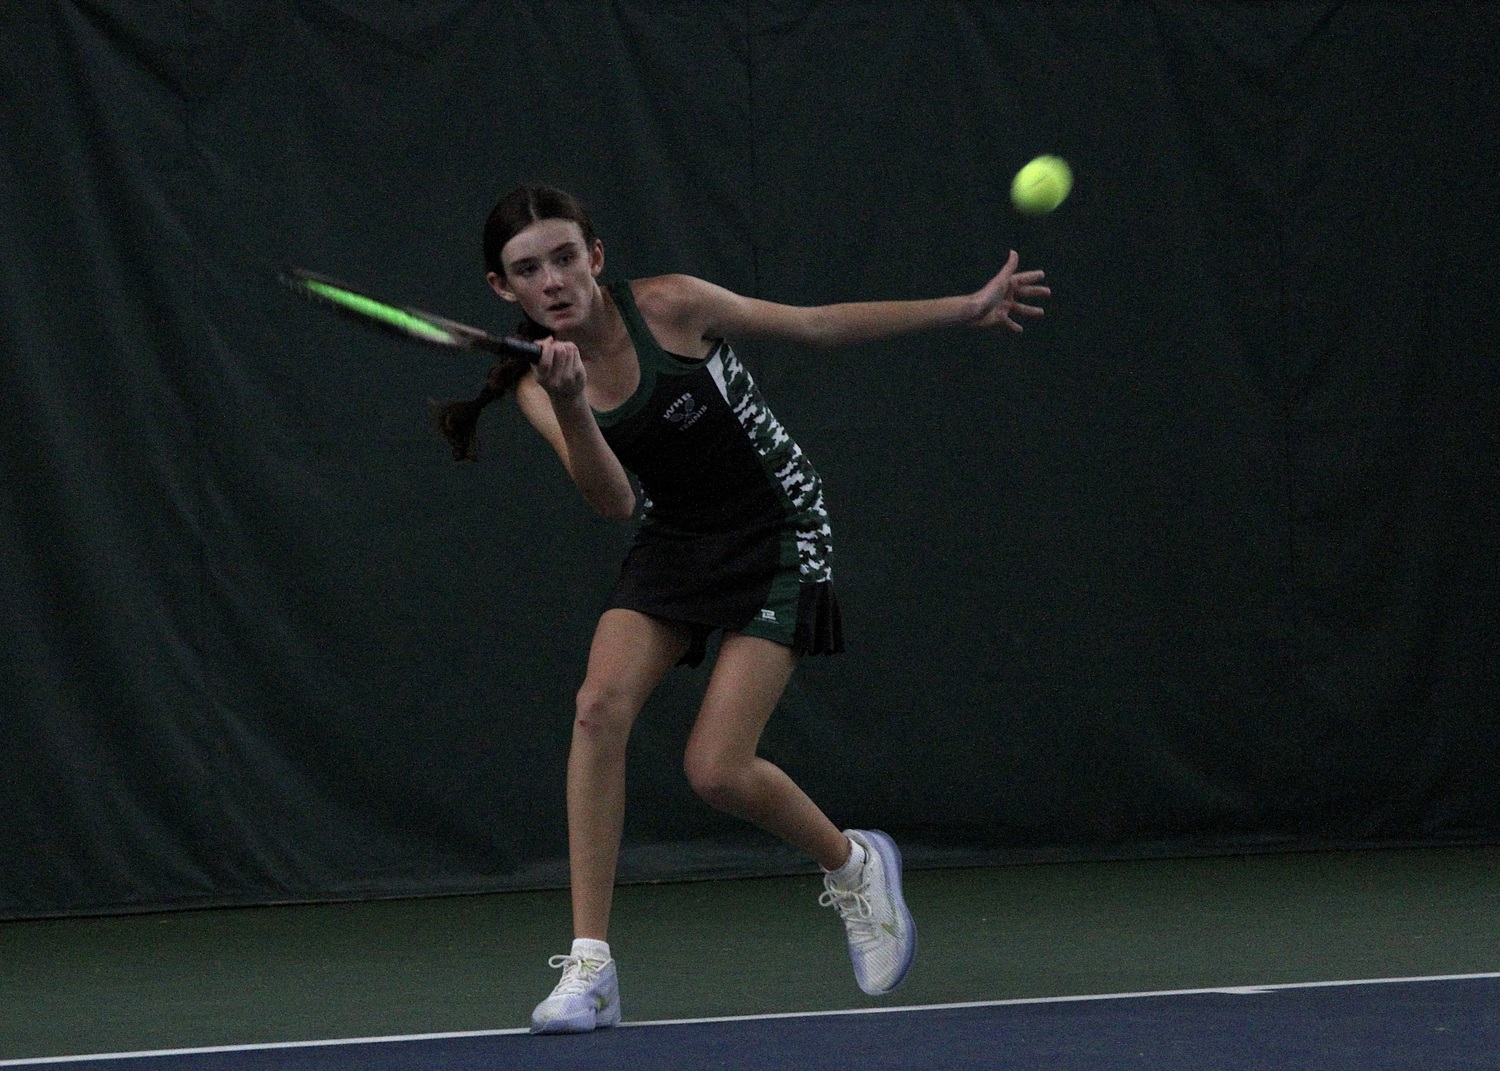 Eighth-grader Ava Borruso powers the ball across the court. DESIRÉE KEEGAN